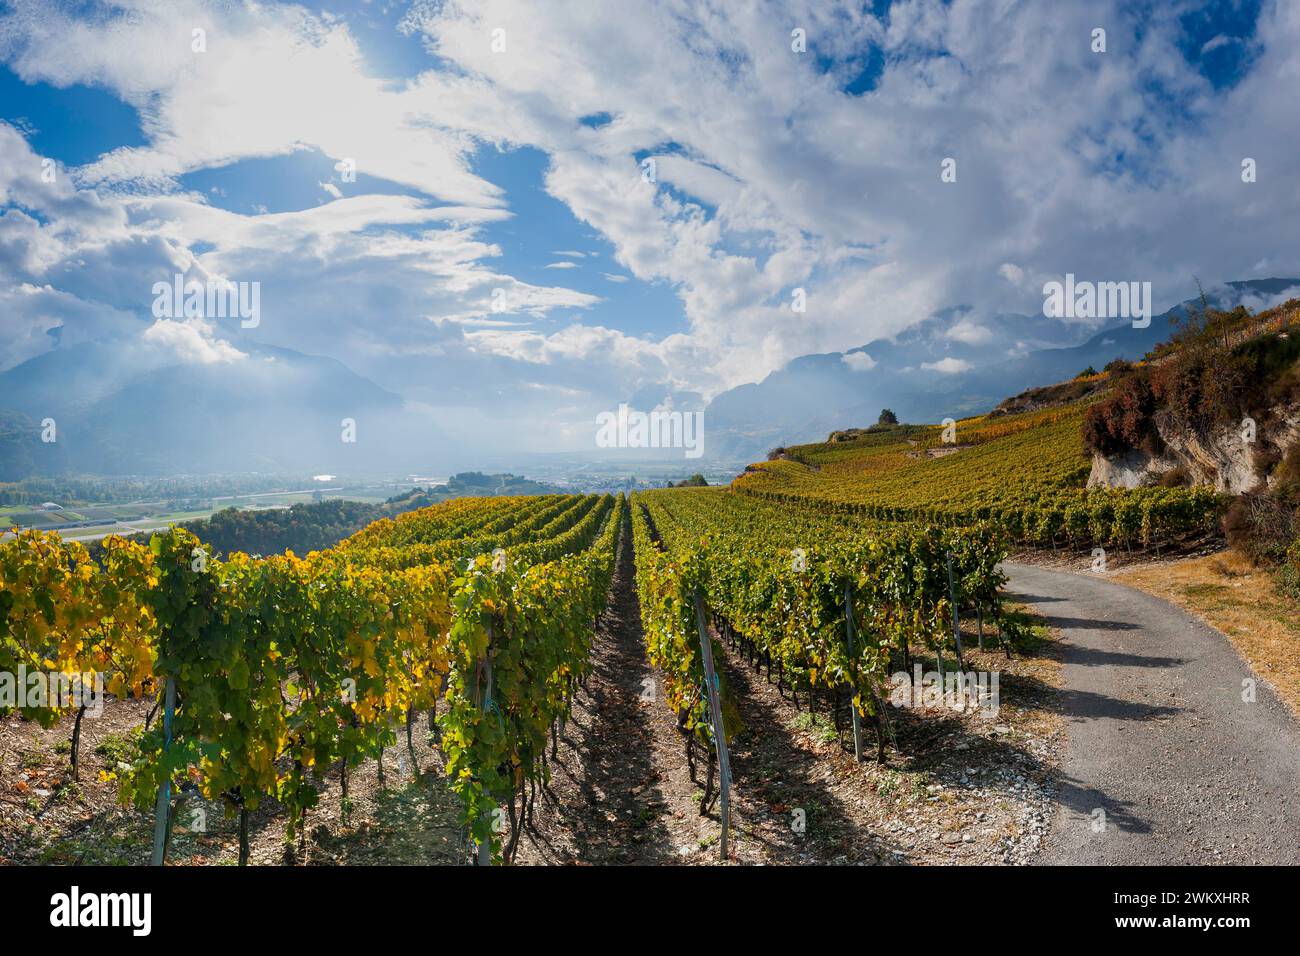 Viti nella Valle del Rodano svizzero, vino, vite, agricoltura, agroalimentare, agricoltura, regione viticola, viticoltura, panorama, paesaggio Foto Stock